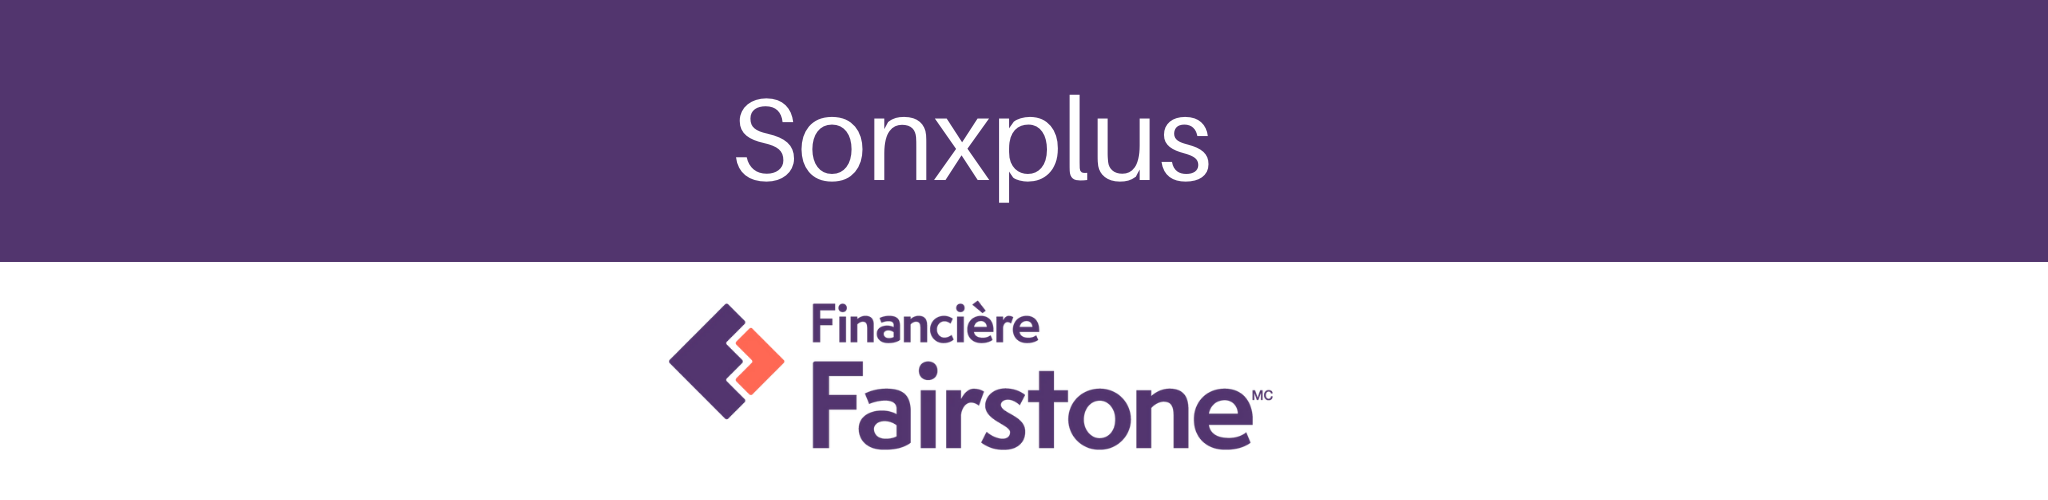 Financement Fairstone | Sonxplus Granby